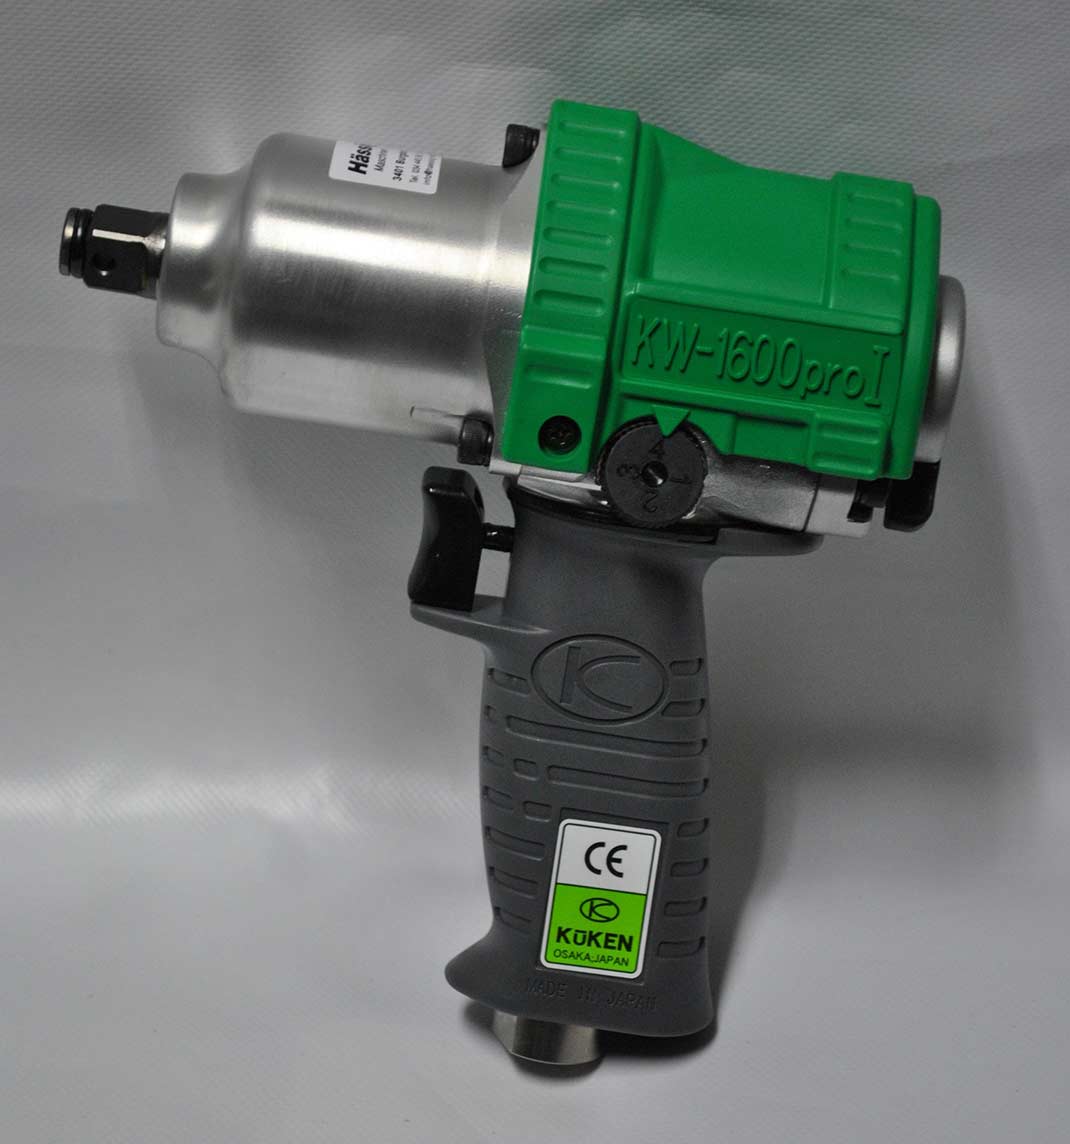 Druckluftschlagschrauber Kuken KW 1600 Pro I grün 1/2"